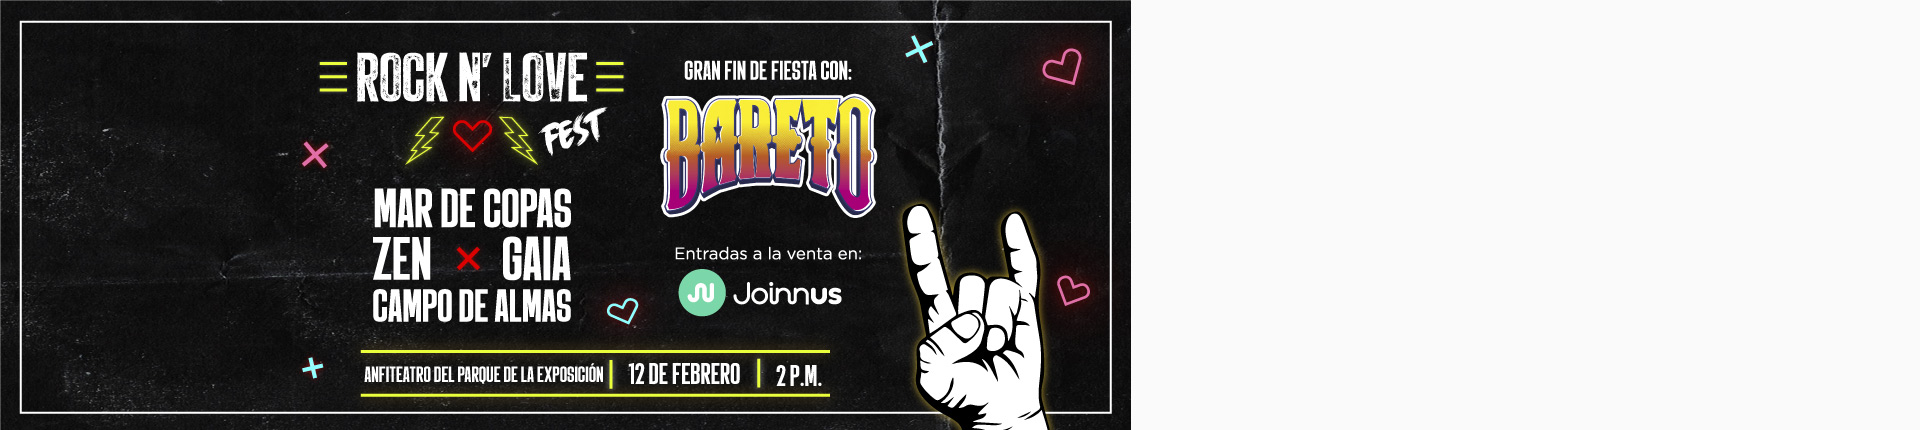 ROCK N´ LOVE FEST - Club El Comercio Perú. 